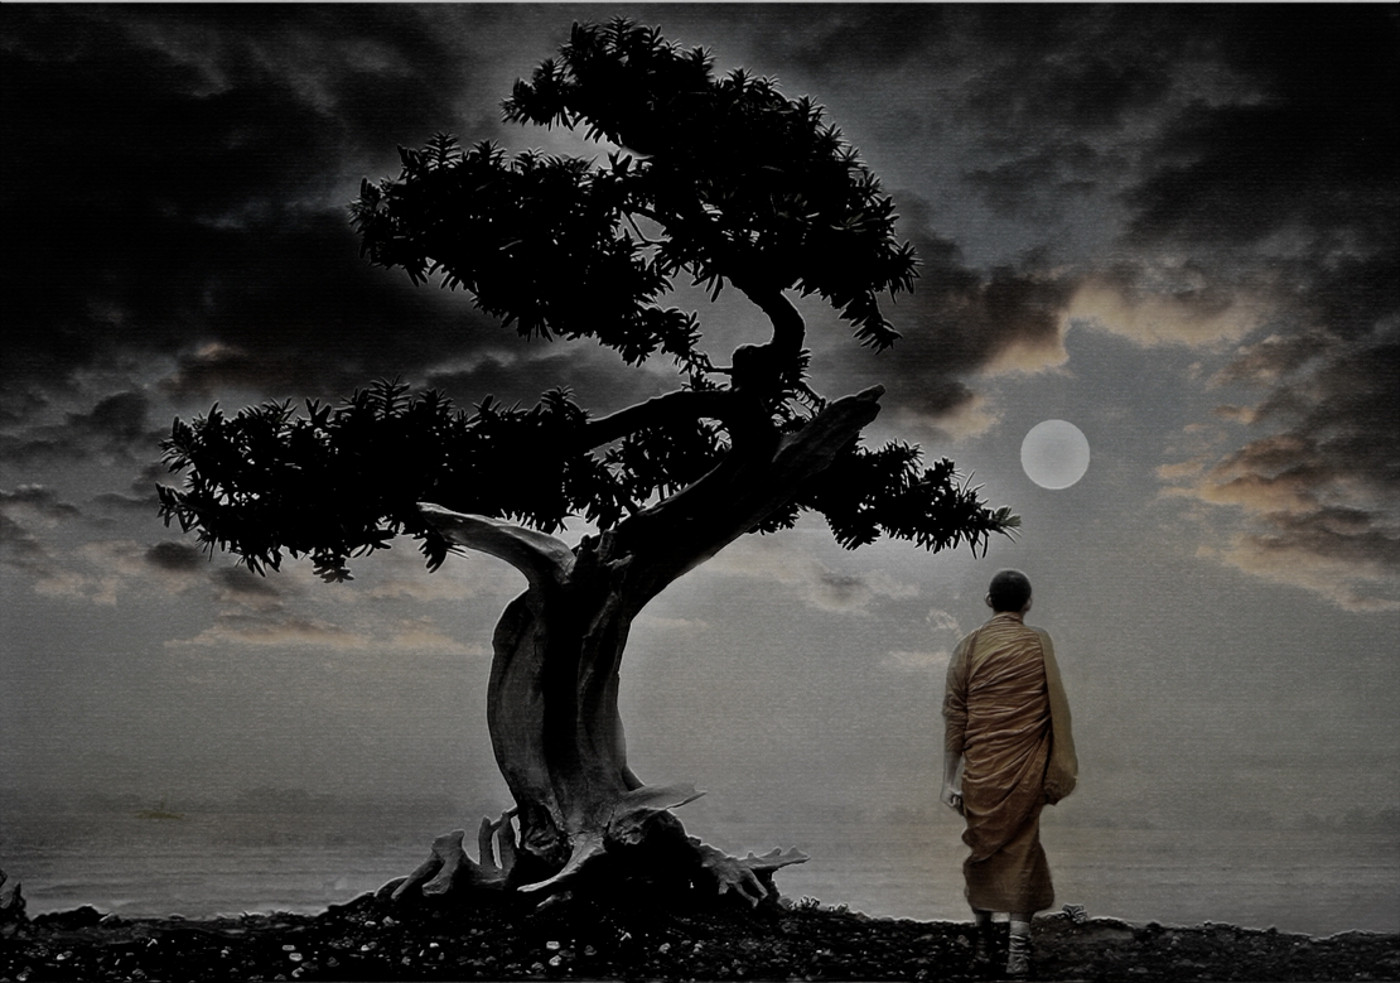 Свобода размышления. Философские размышления. Философия природы. Одинокое дерево и человек. Дерево жизни и смерти.